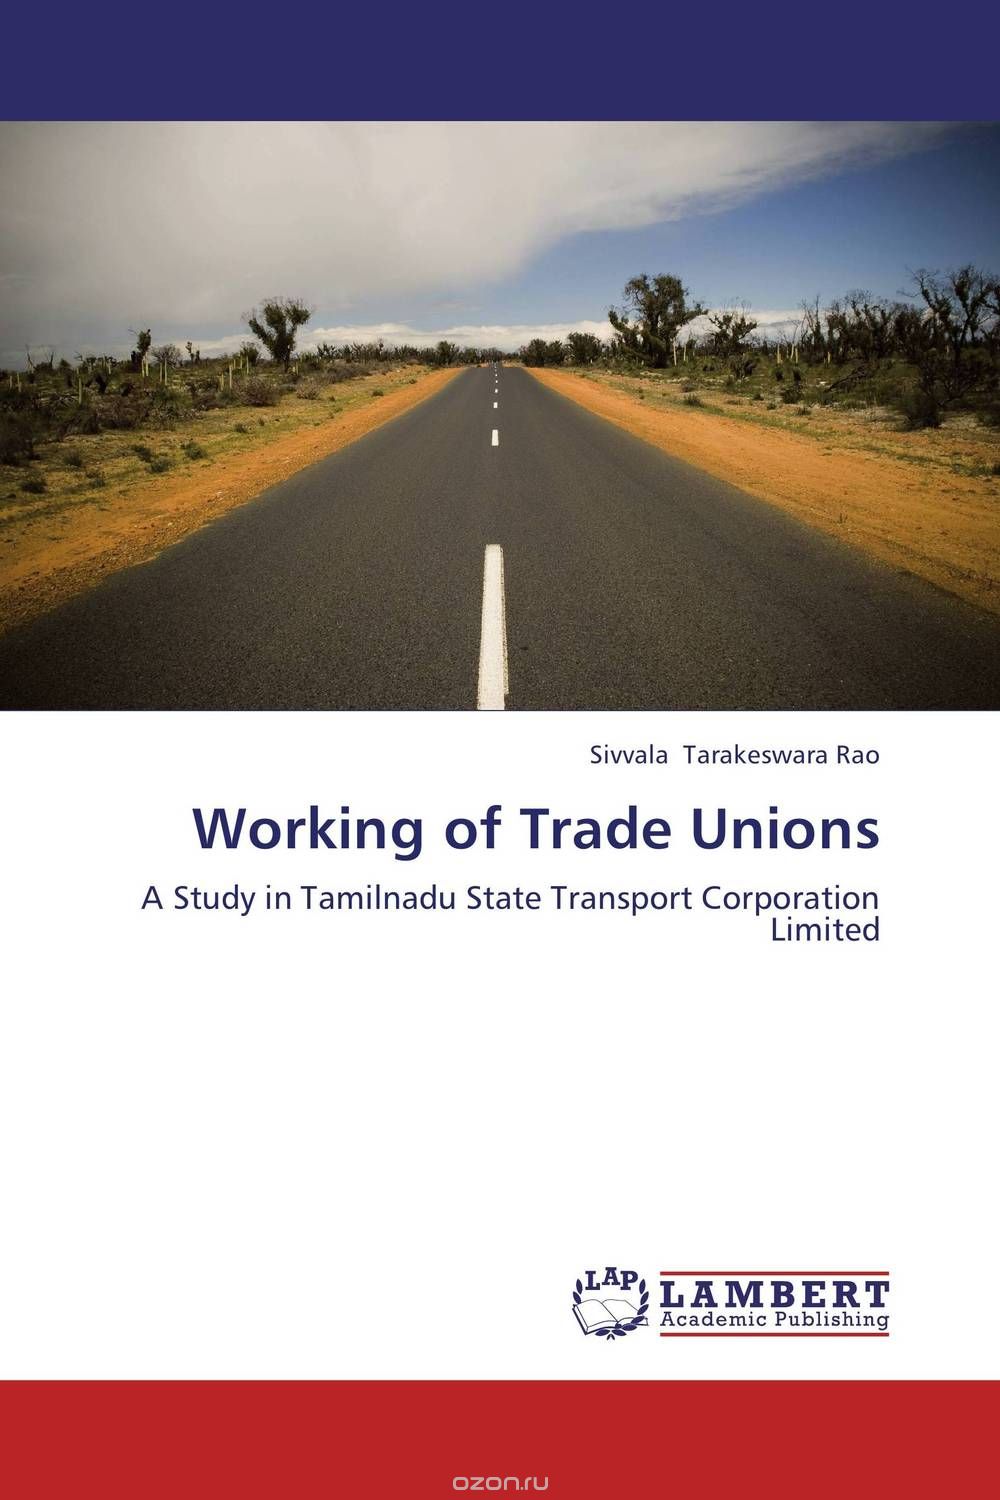 Скачать книгу "Working of Trade Unions"